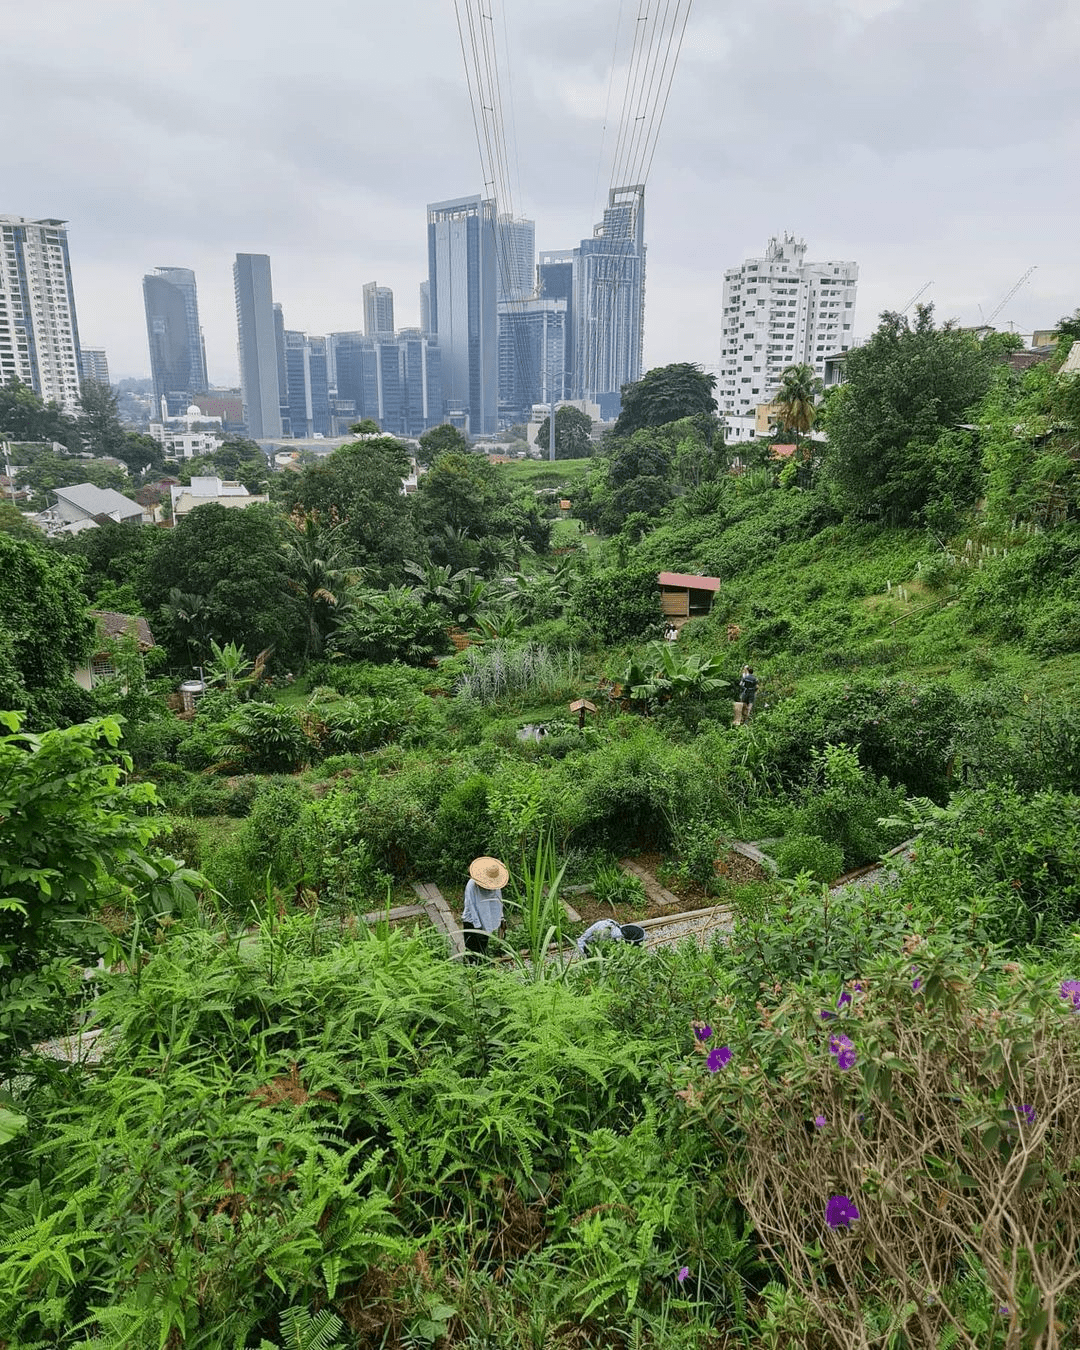 Kebun Kebun Bangsar - garden